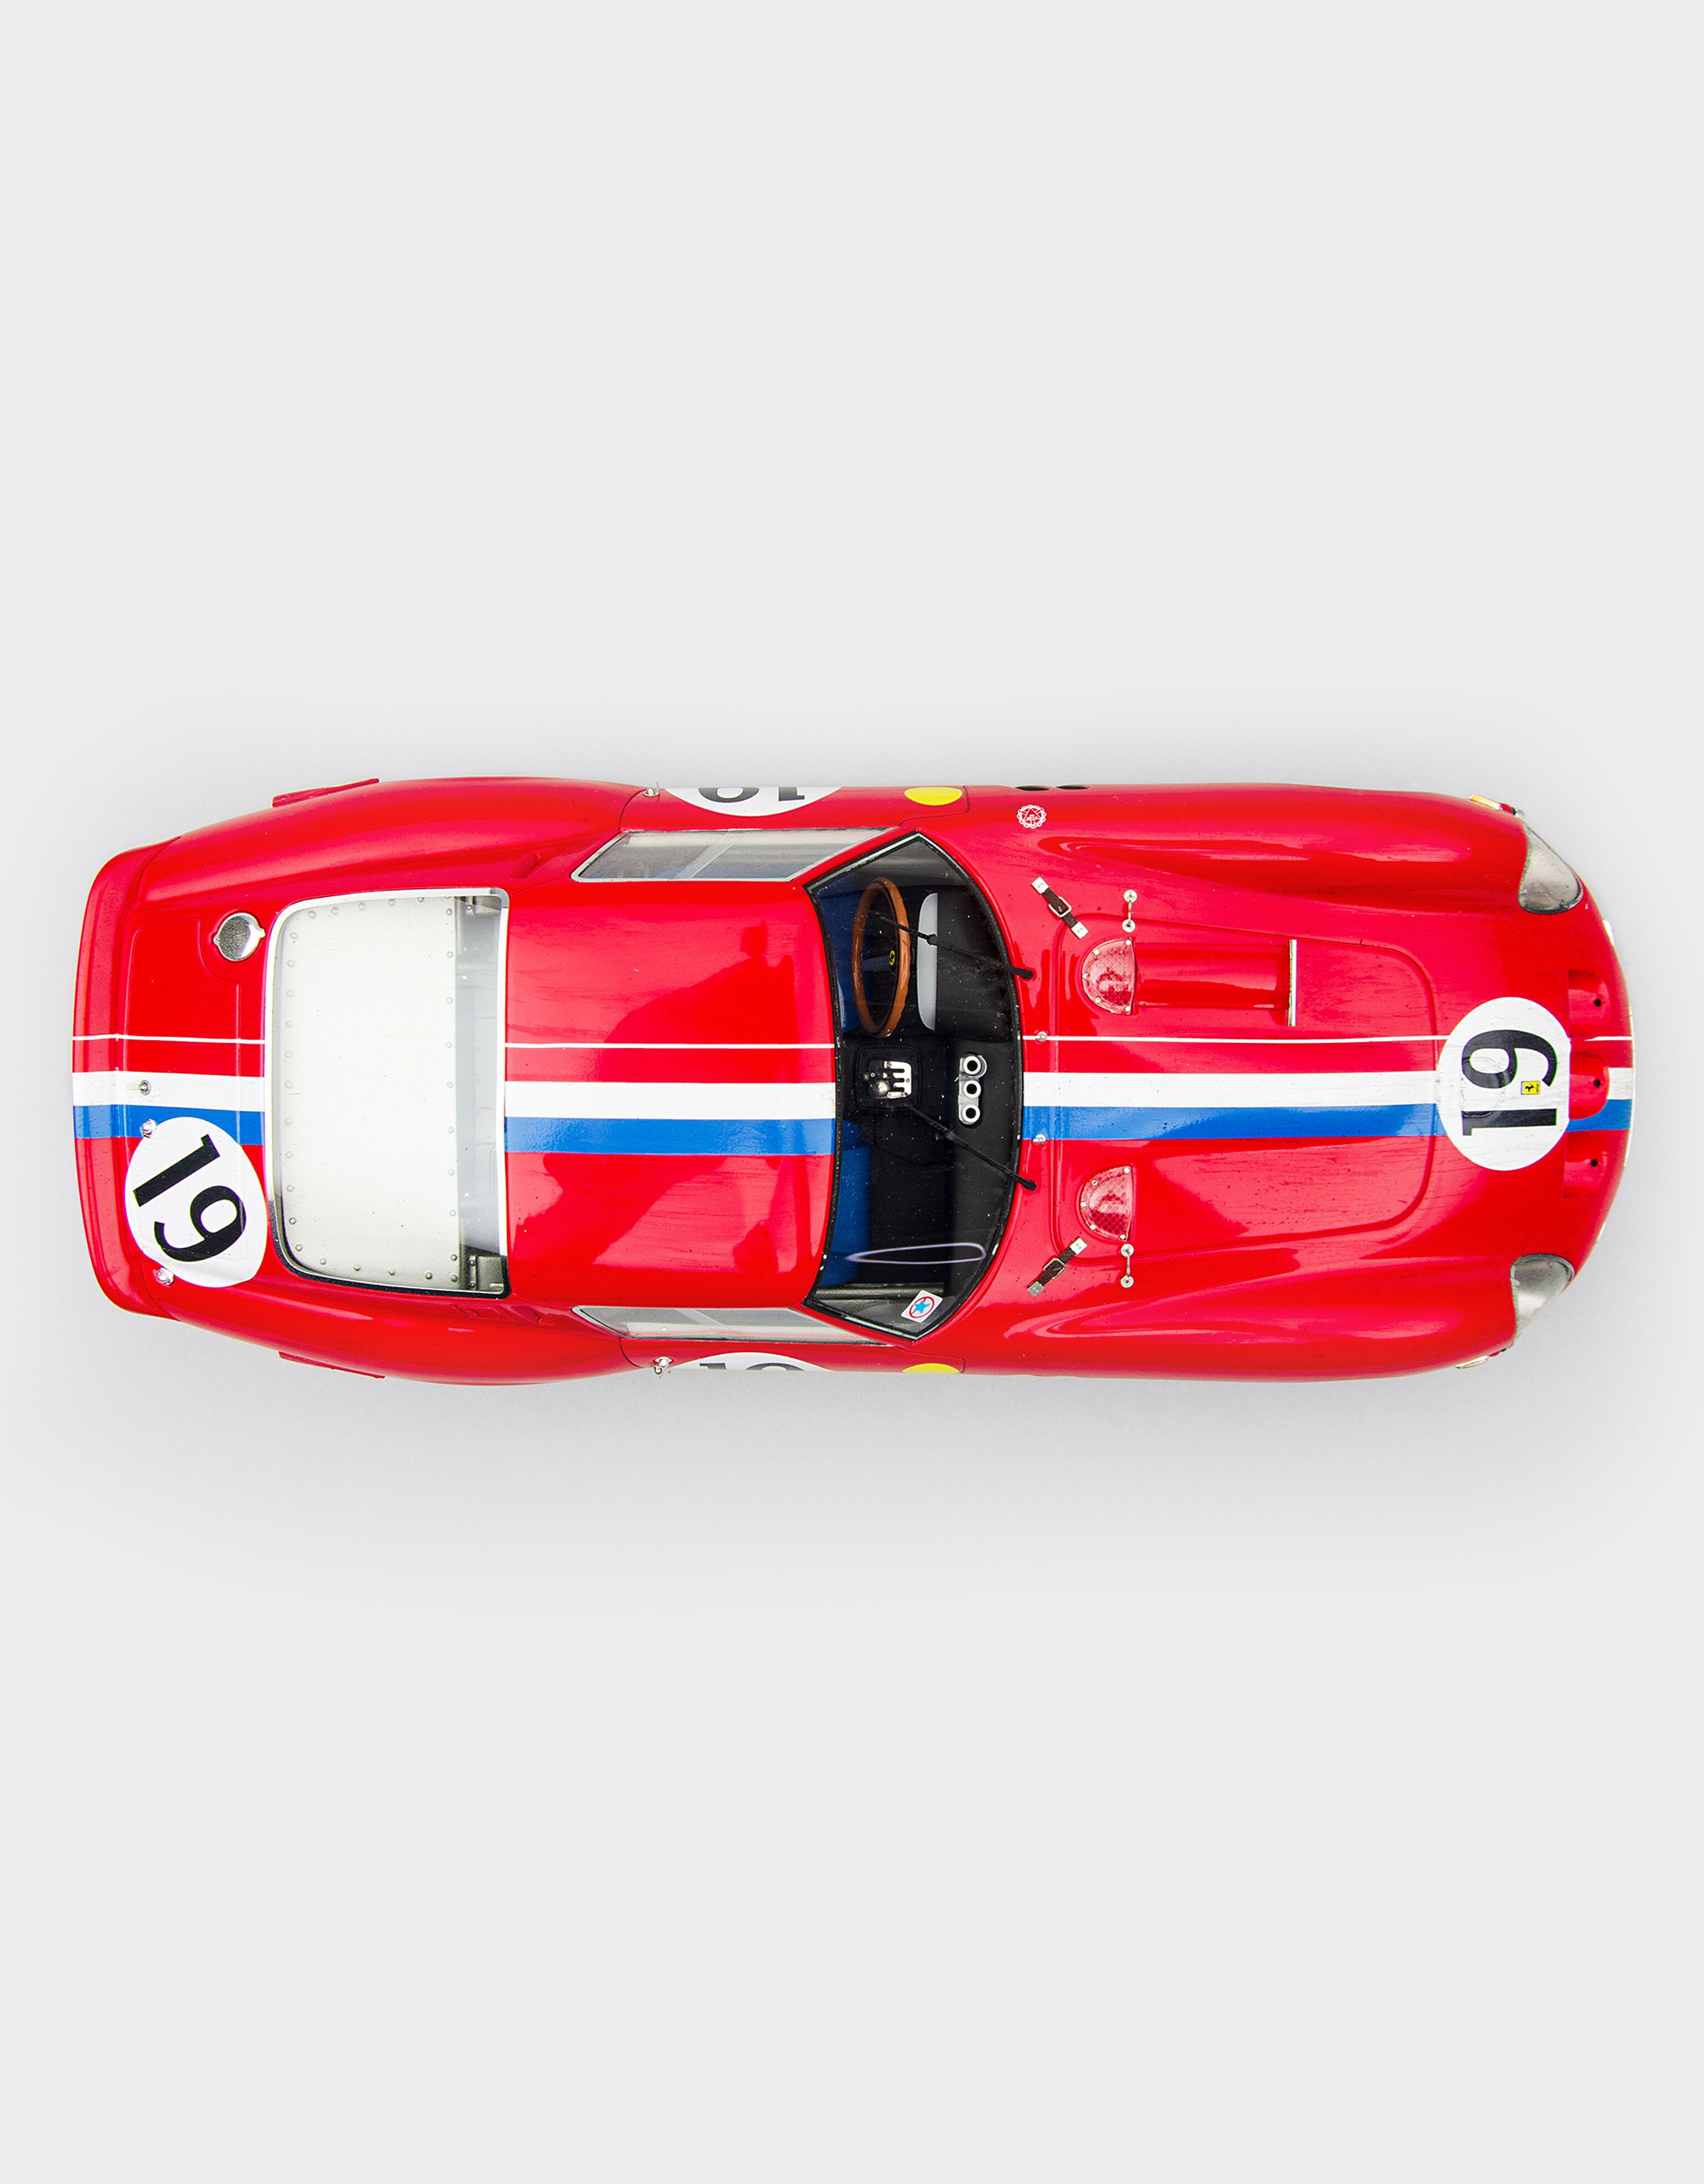 Ferrari Ferrari 250 GTO 1962 “Race weathered” Le Mans 1：18 比例模型车 Rosso Corsa 红色 F0893f